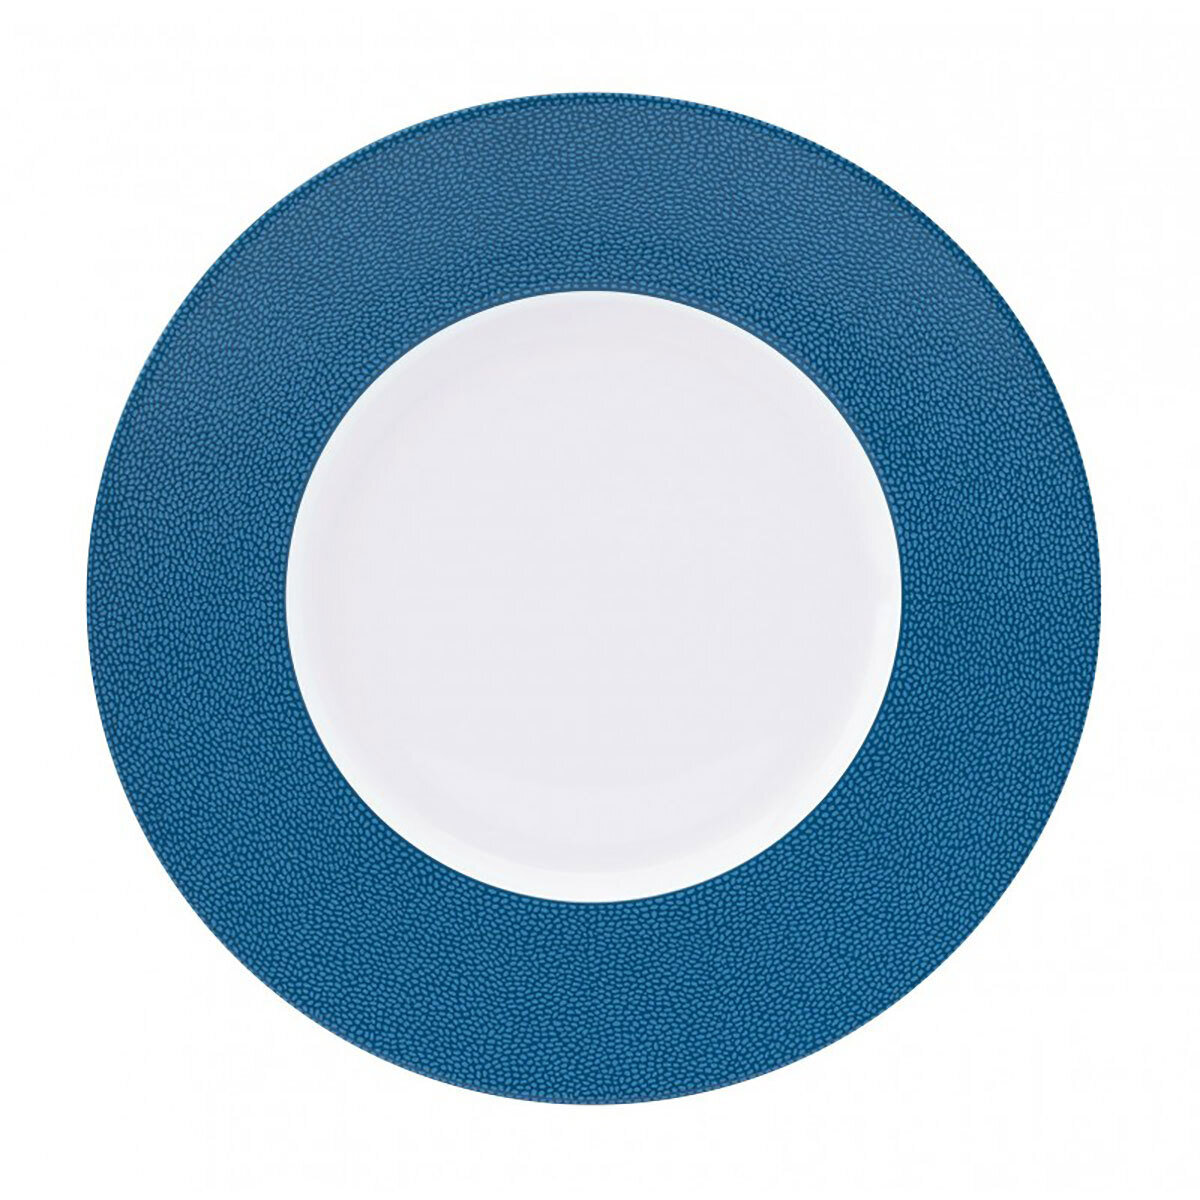 Deshoulieres Seychelles Sea Blue Soup Cereal Plate 033475